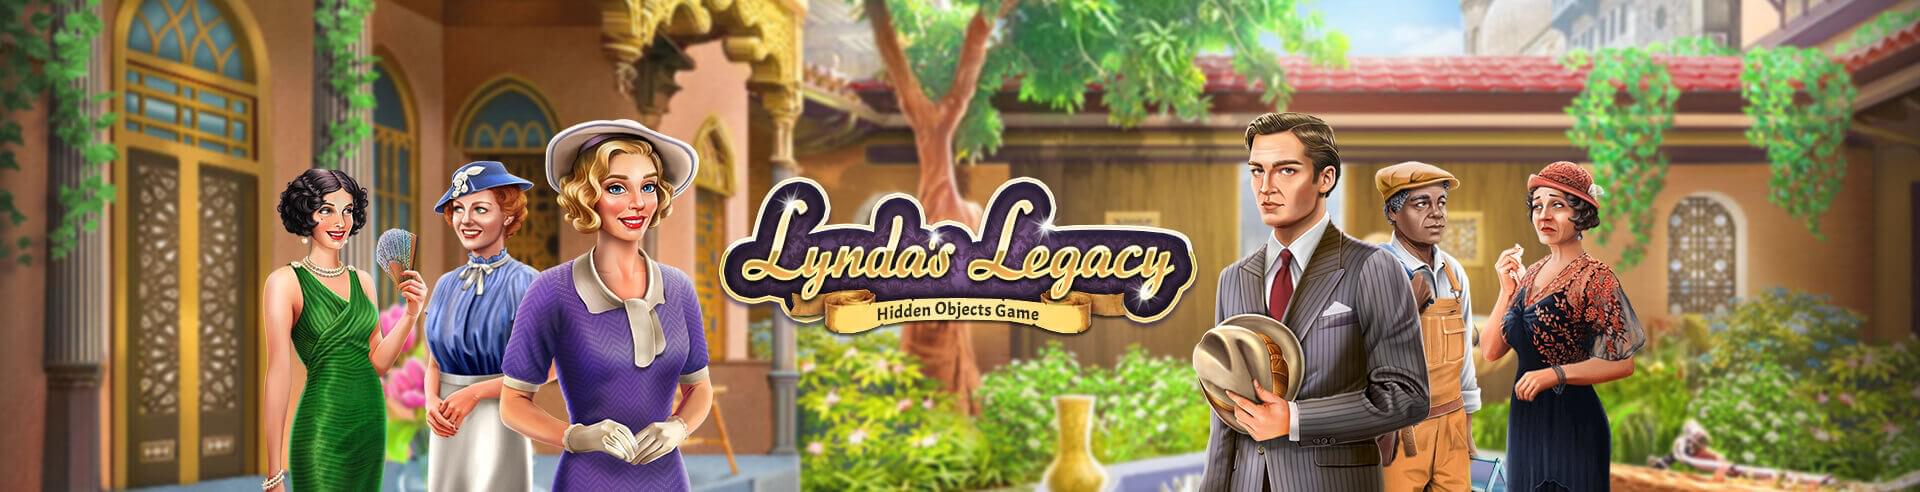 Lynda's Legacy